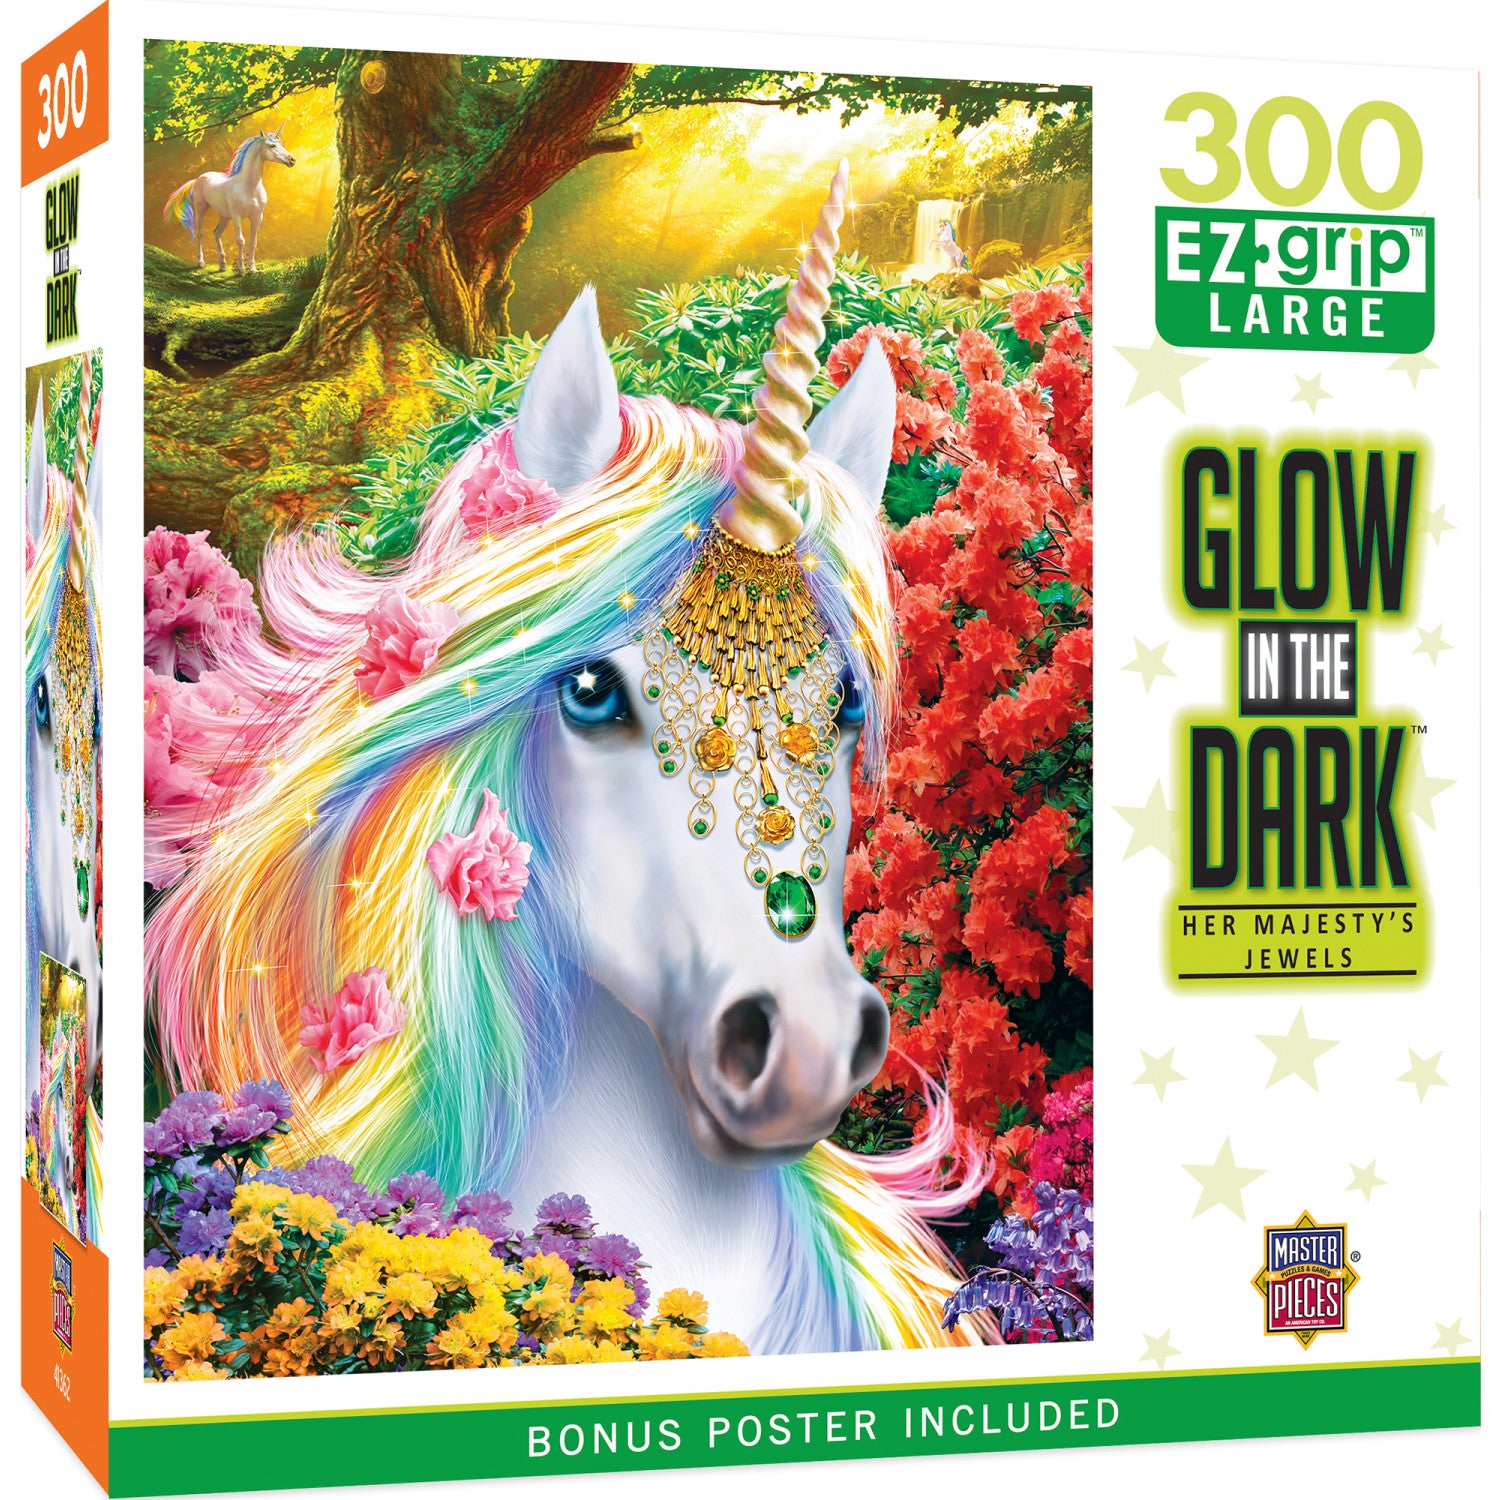 Glow in the Dark - Her Majesty's Jewels 300 Piece EZ Grip Puzzle